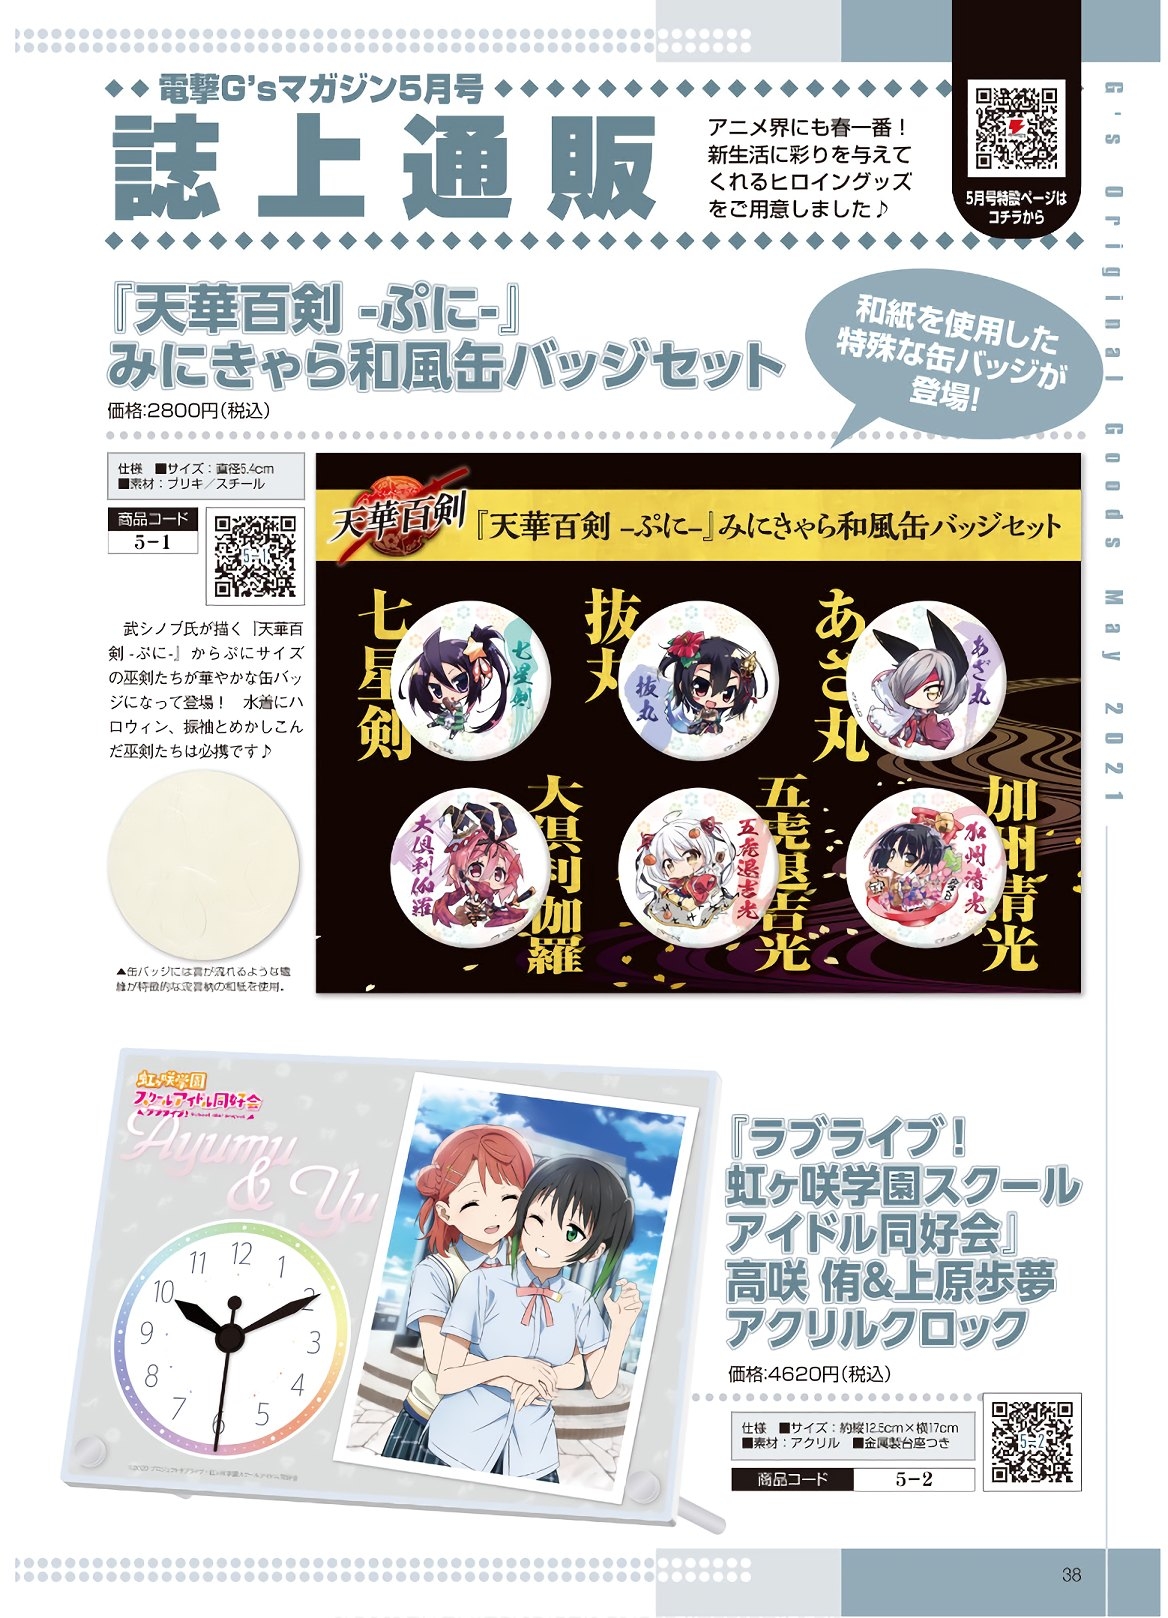 Dengeki G's Magazine #286 - May 2021 35